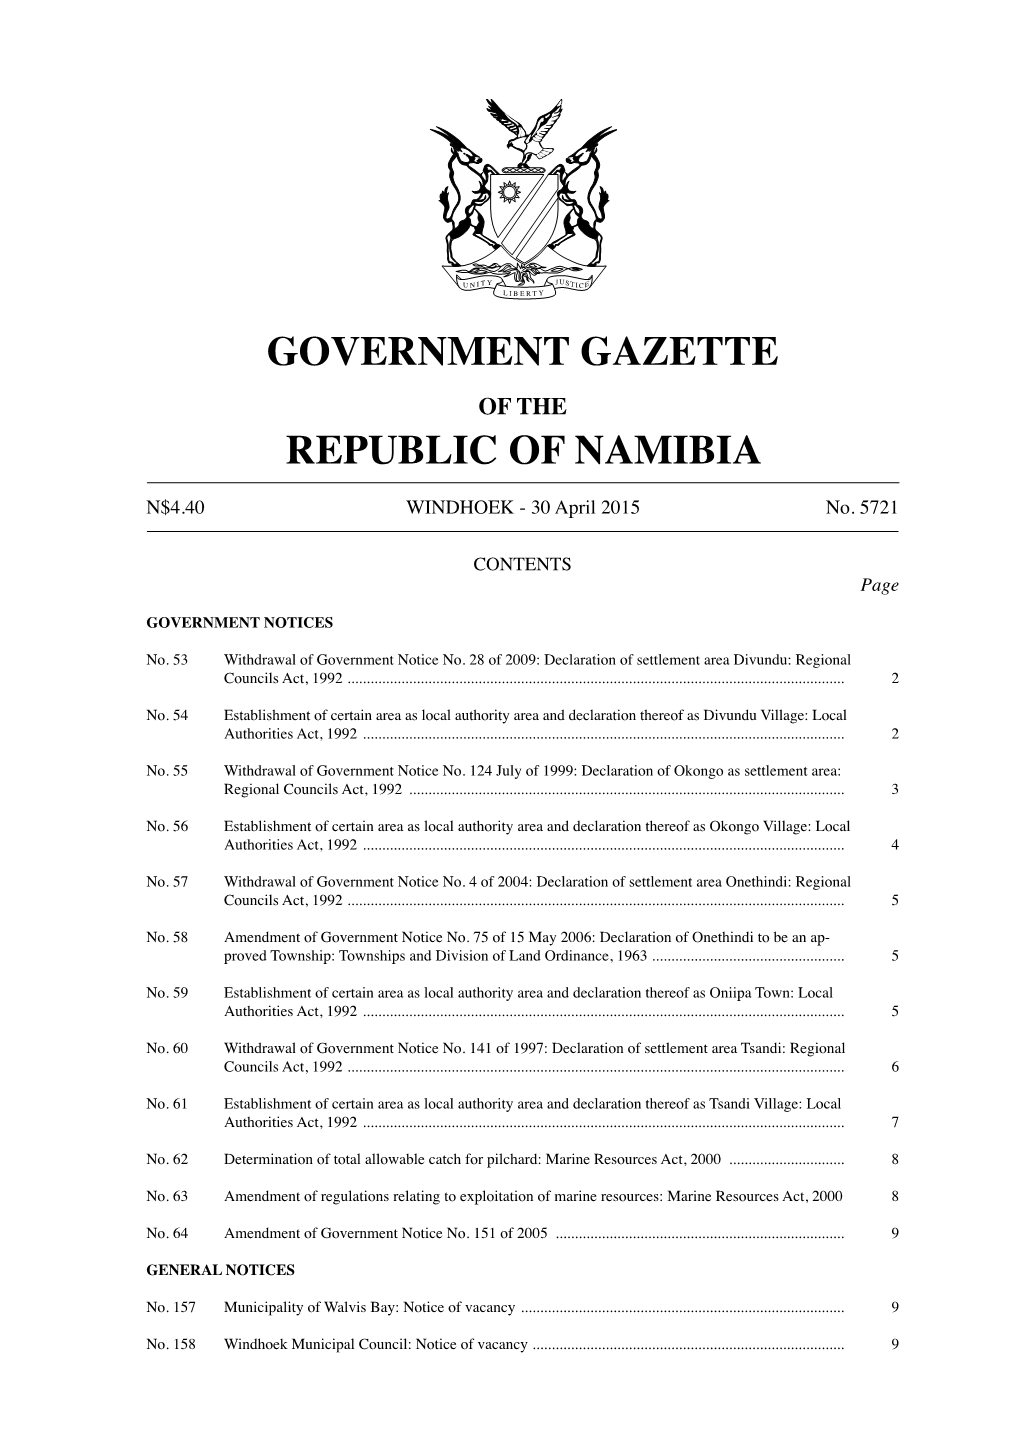 Government Gazette No. 5721